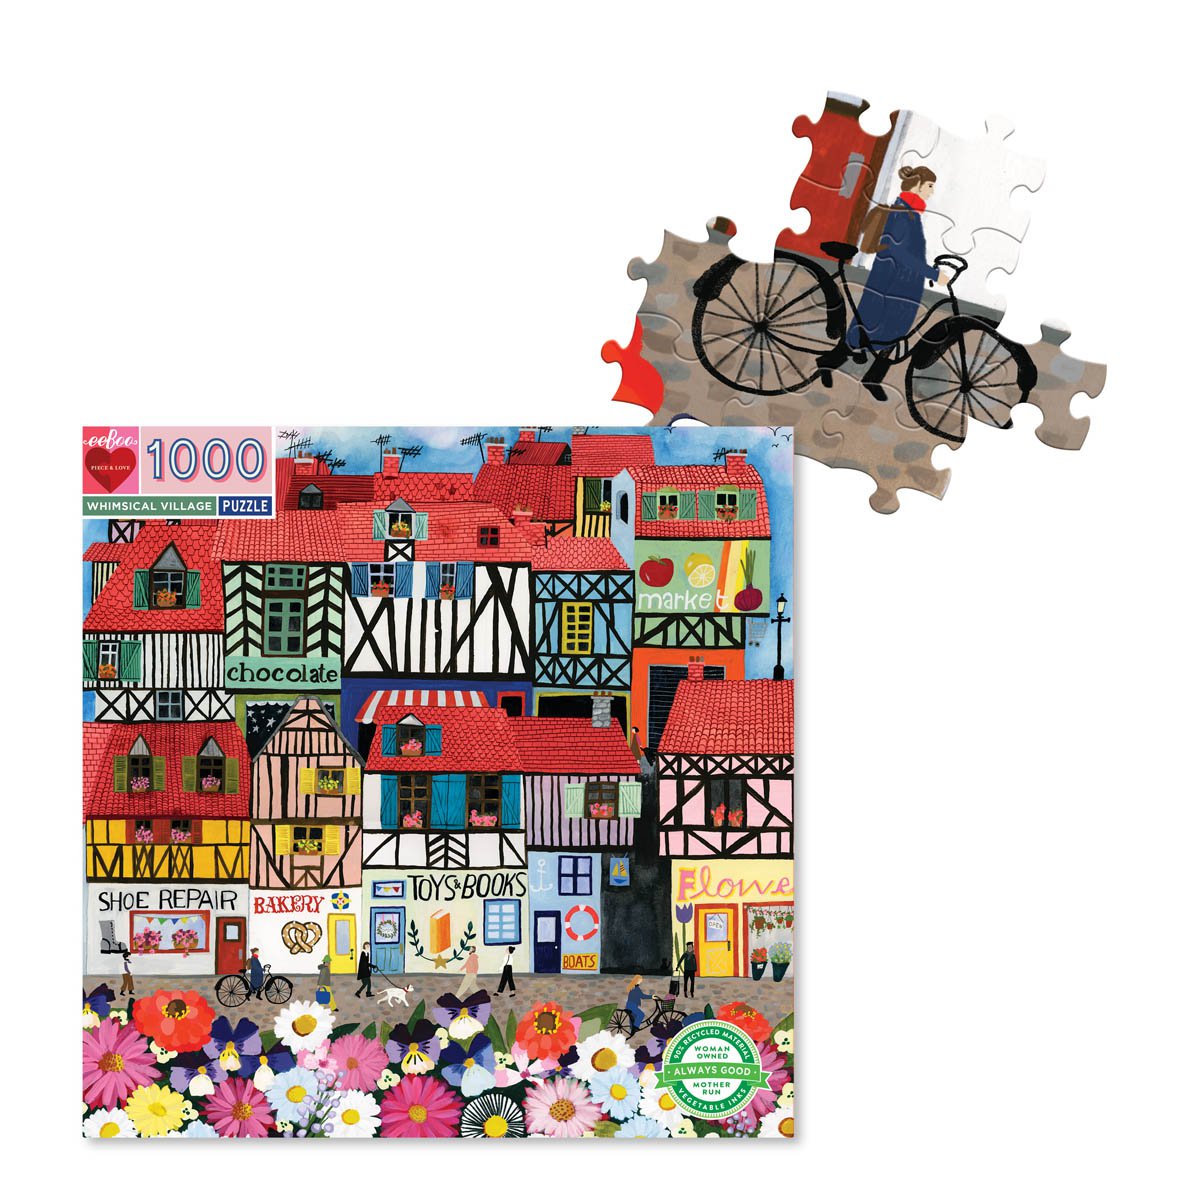 Eeboo | 1000 piece puzzle | Whimsical Village - pieces